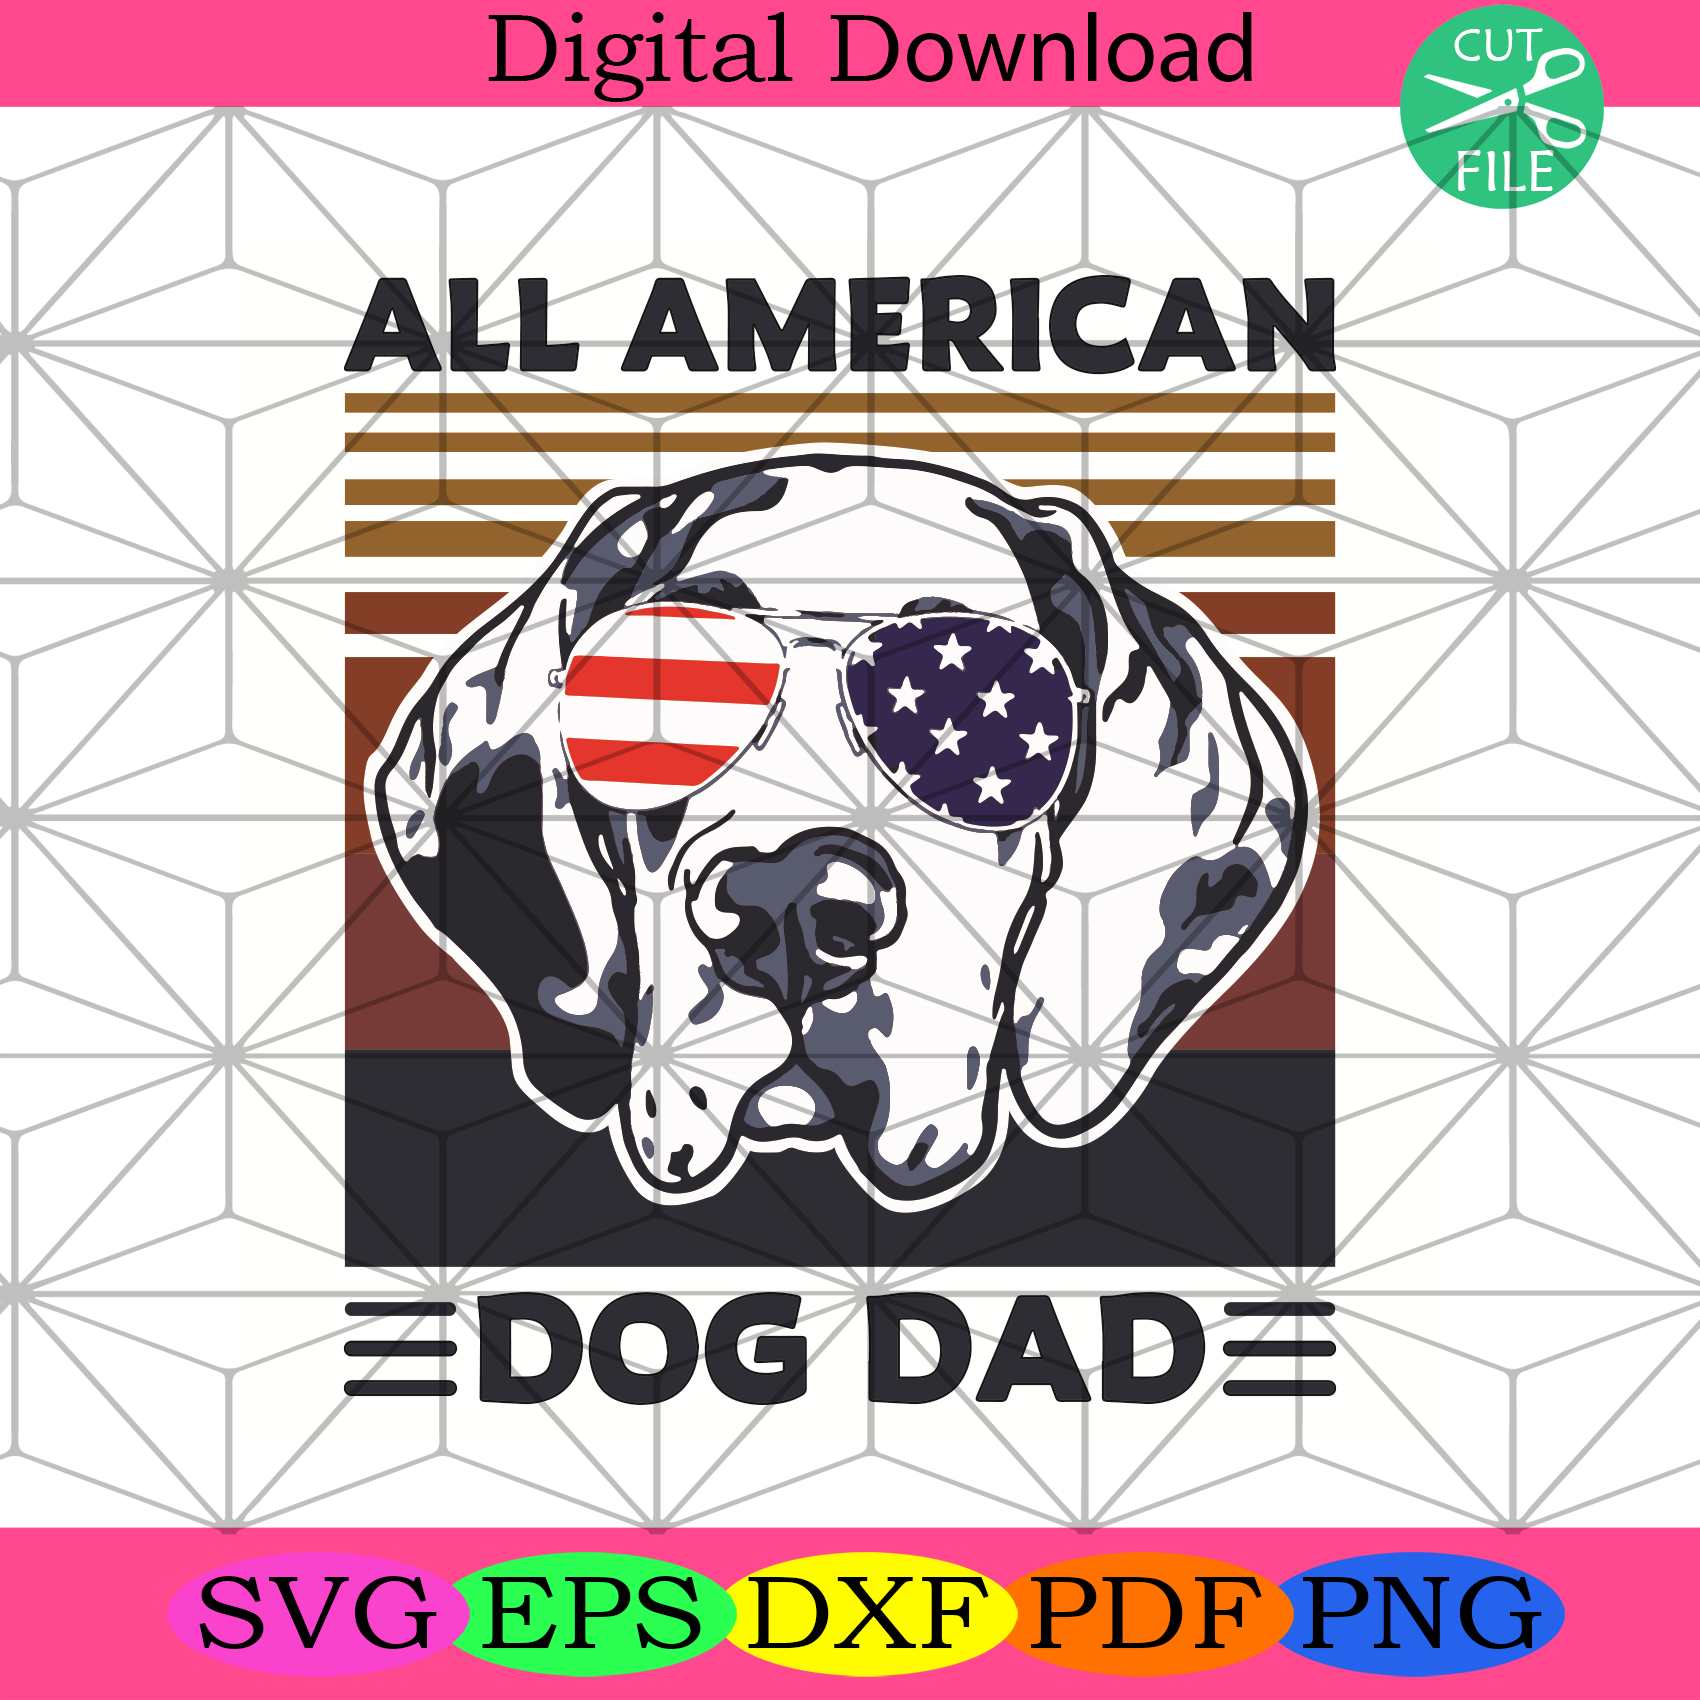 All American Dog Dad Svg Trending Svg, Dog Dad Svg, American Svg